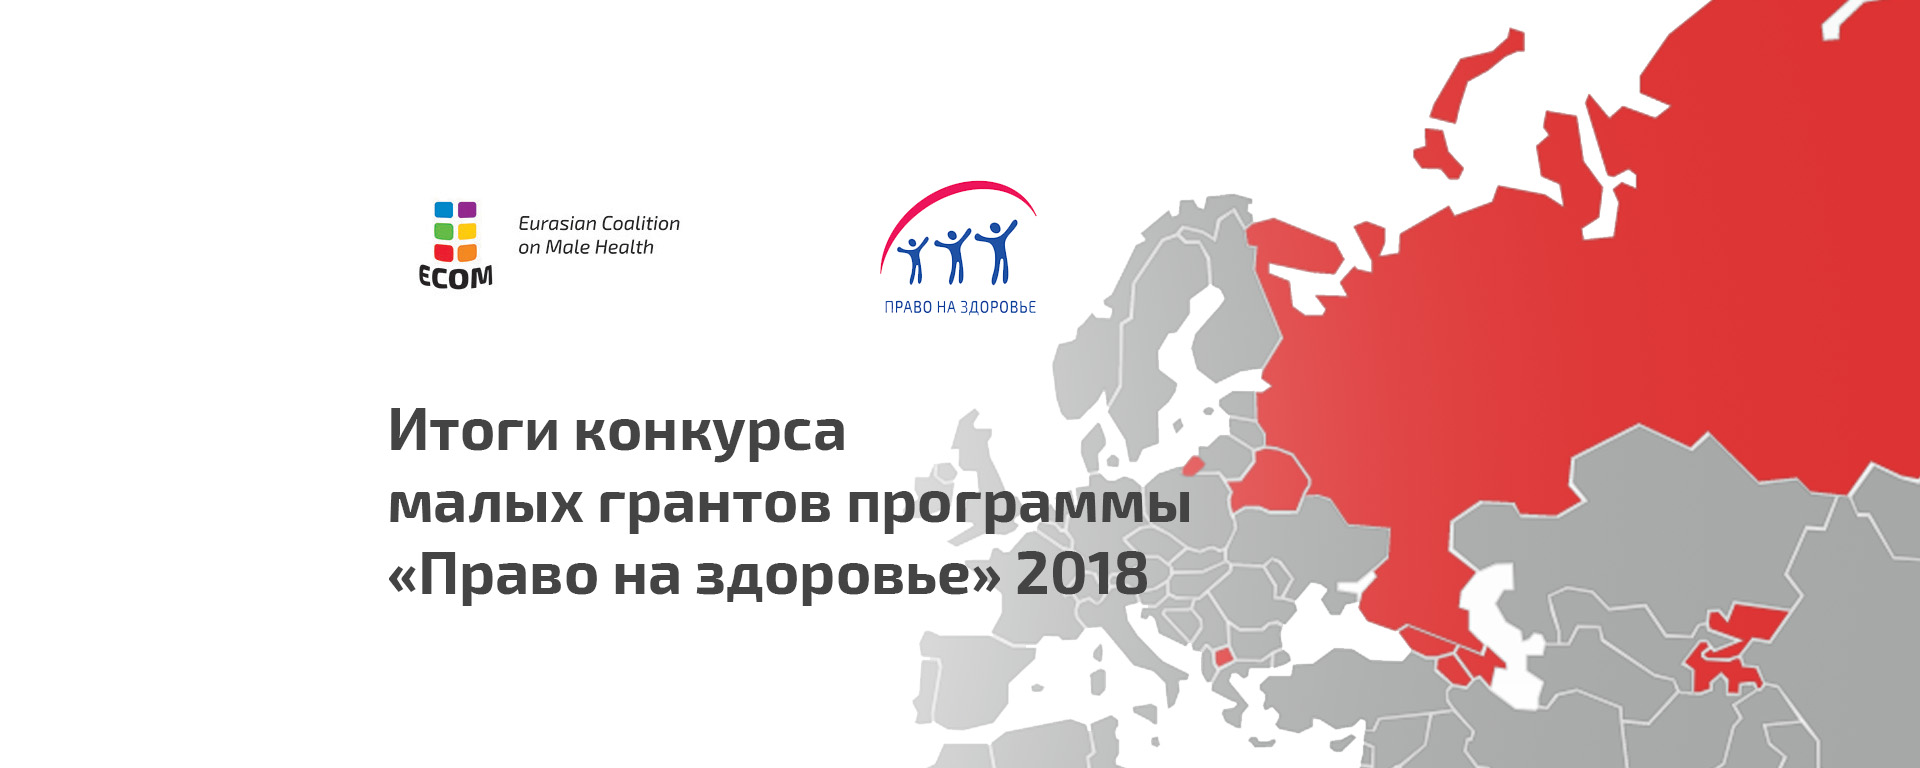 Итоги конкурса малых грантов в рамках региональной программы ЕКОМ «Право на здоровье» 2018